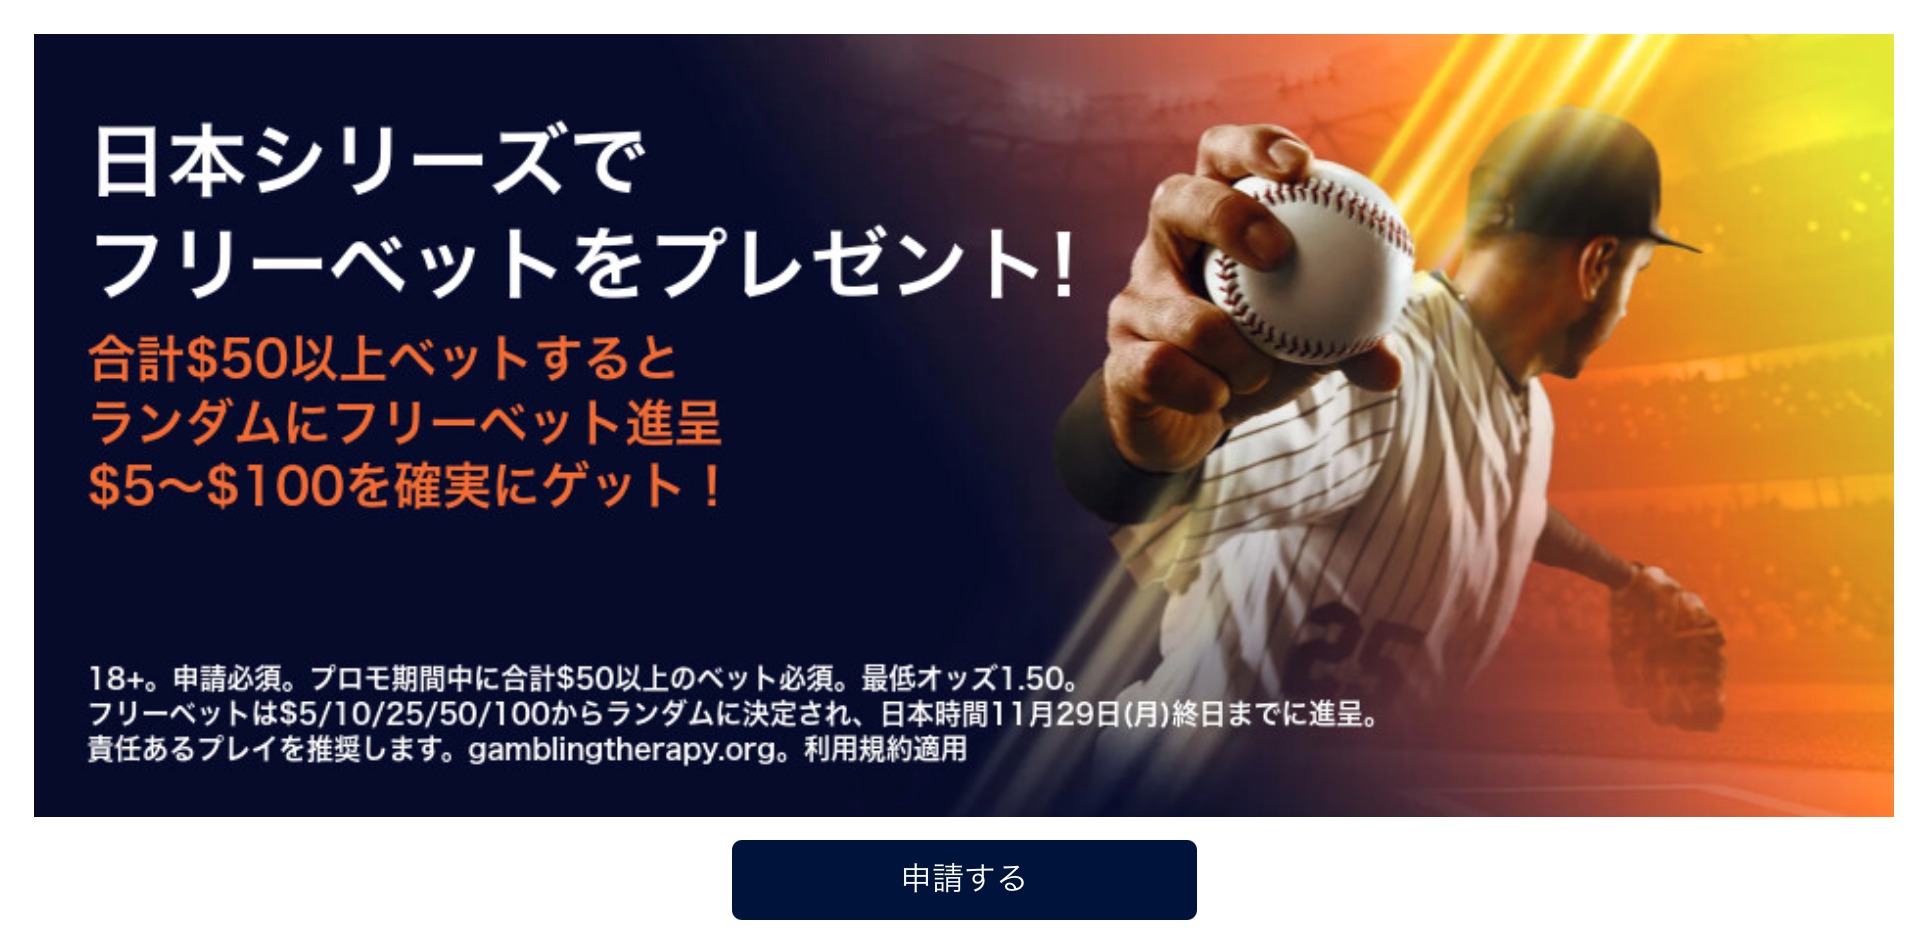 2021年プロ野球日本シリーズ・フリーベットキャンペーン・ウィリアムヒル